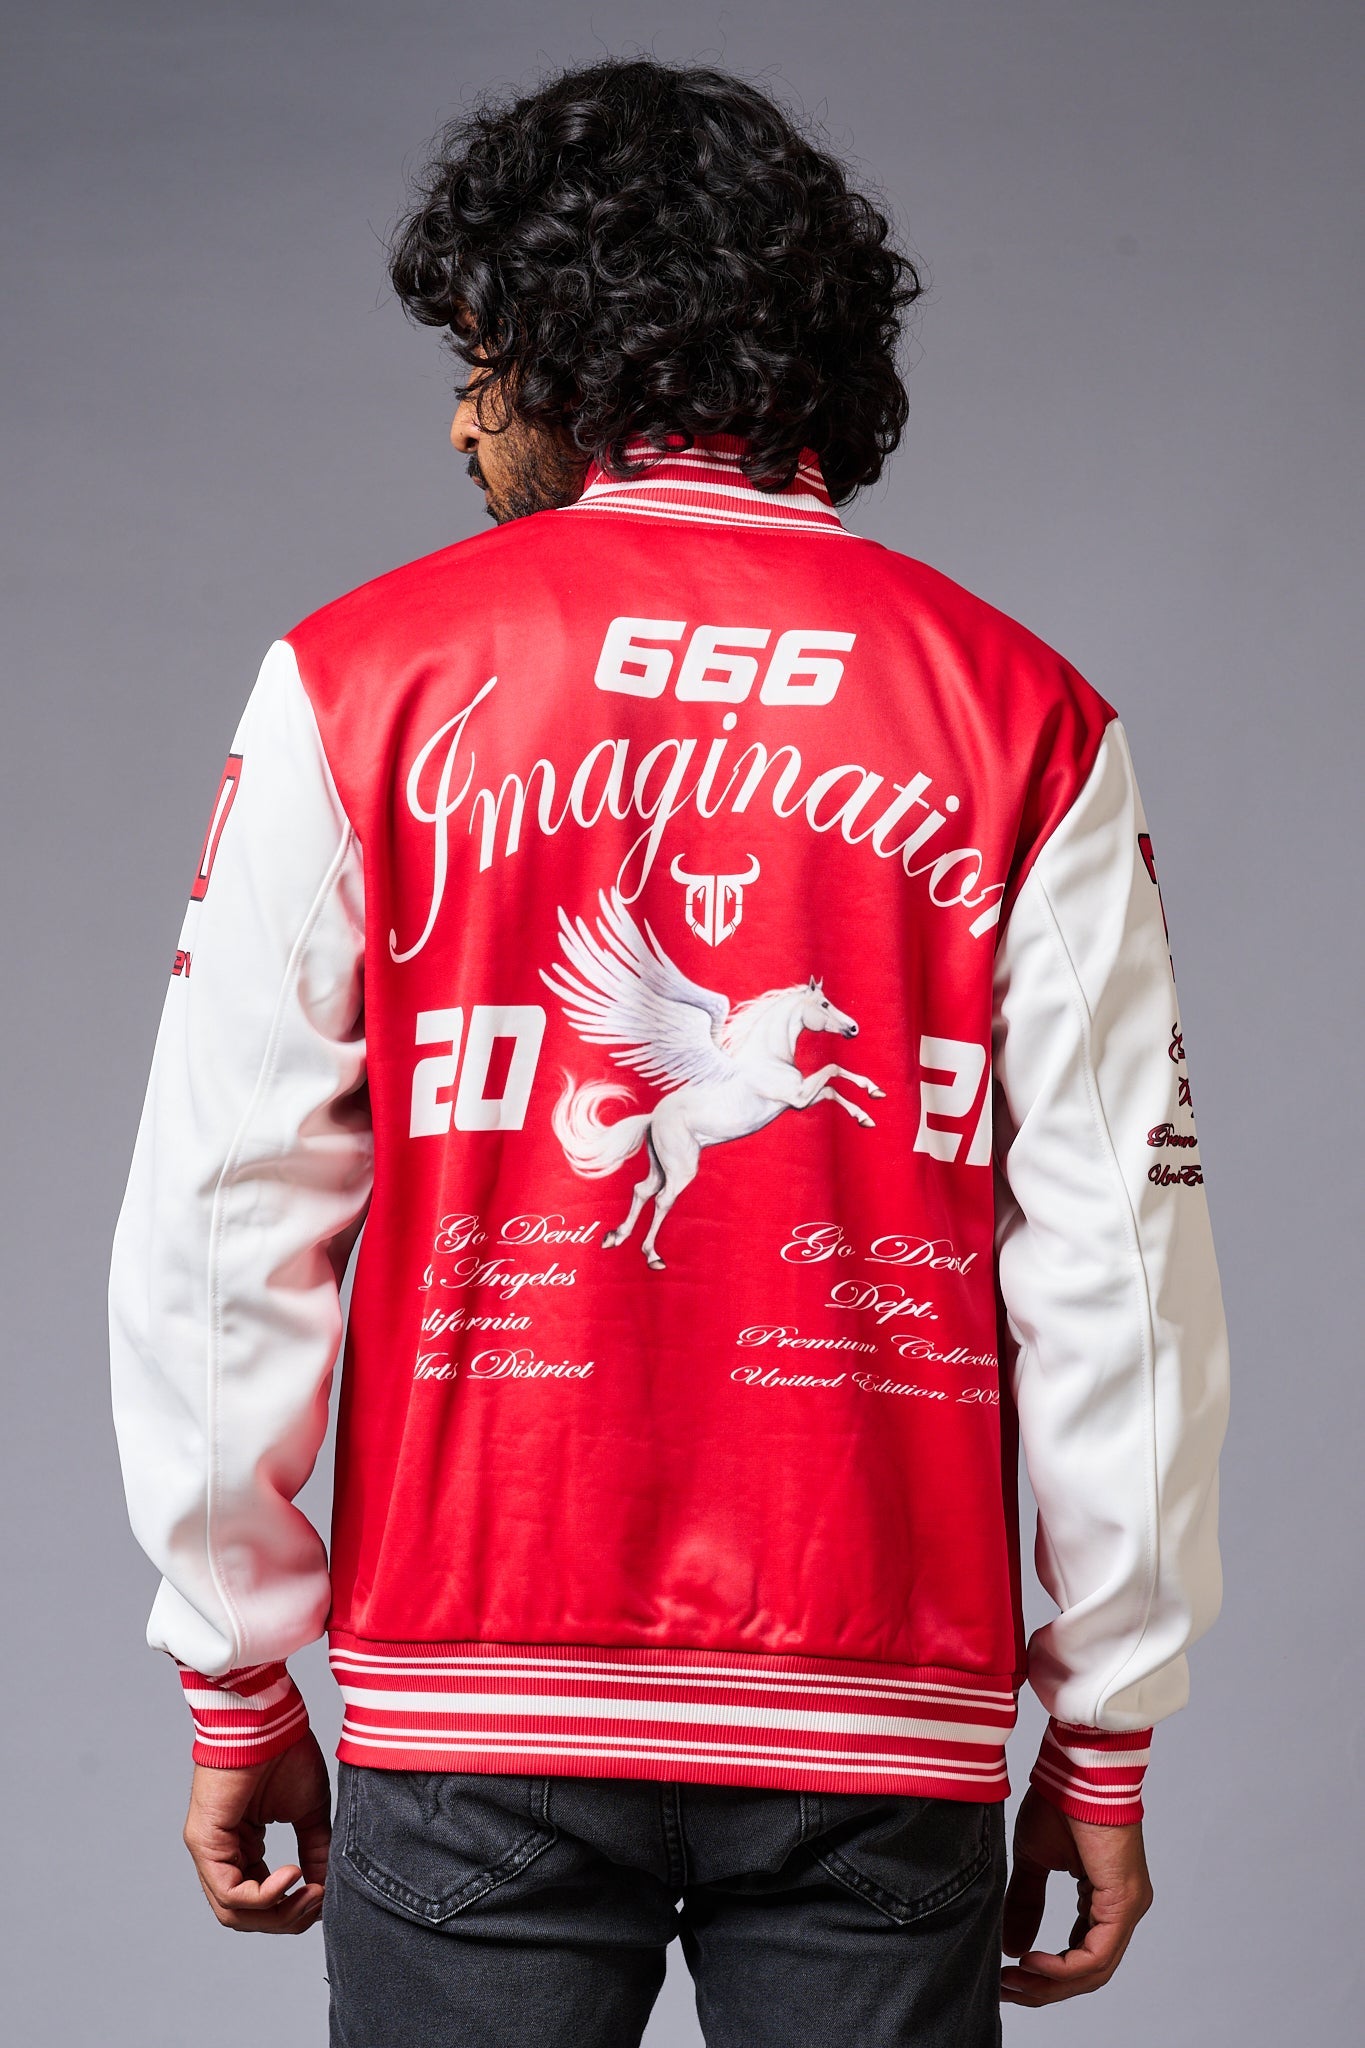 666 Imagination Printed Red & White Varsity Jacket for Men - Go Devil